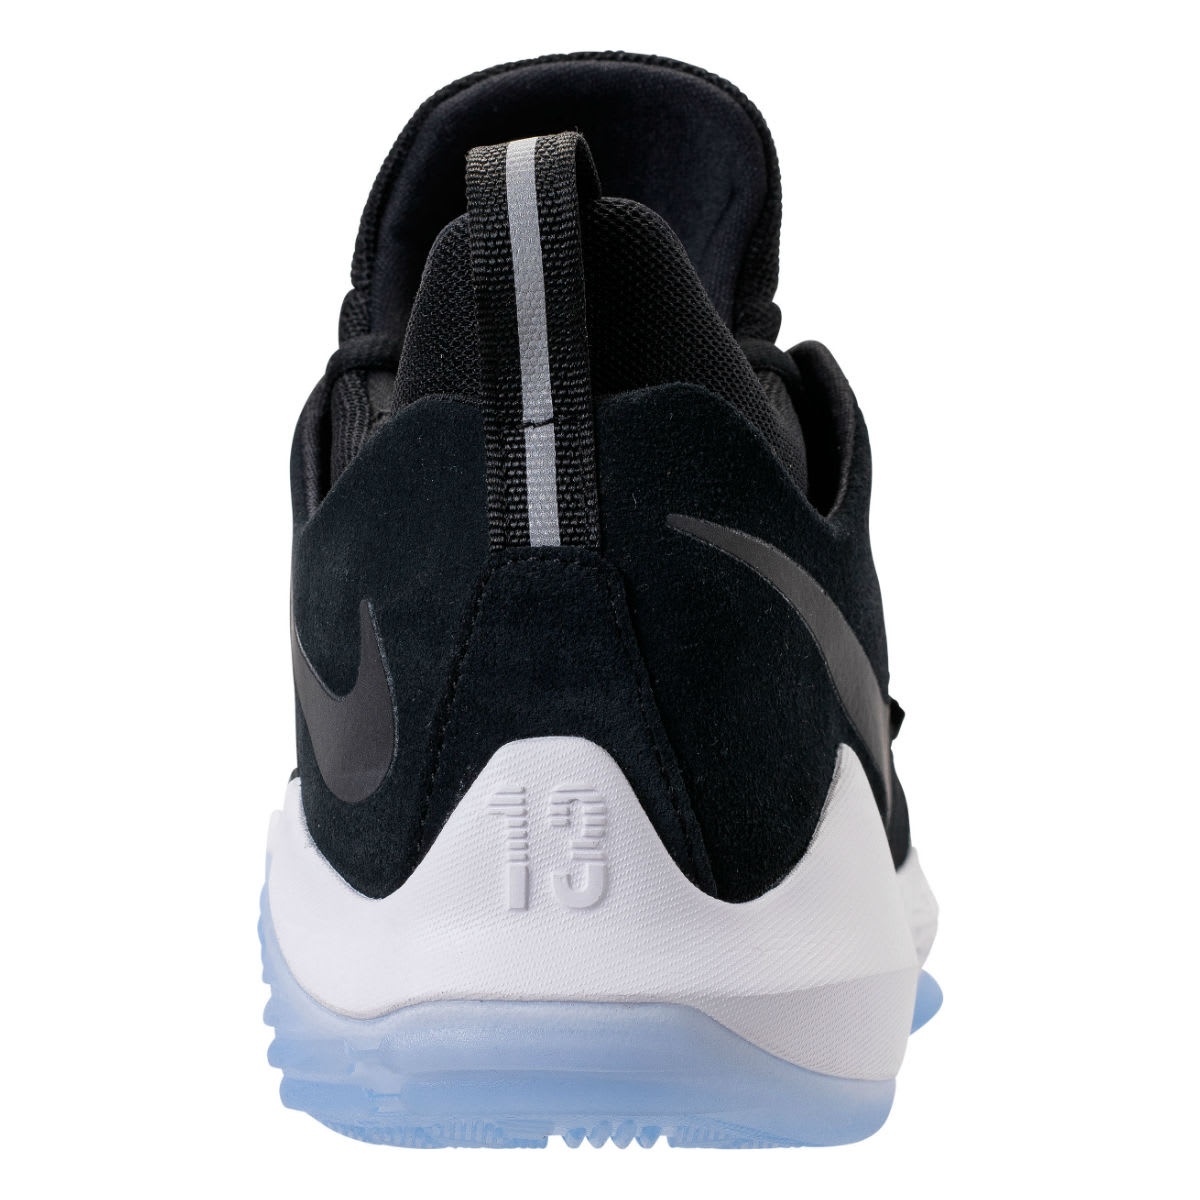 Nike PG1 Black White Hyper Turquoise Release Date Heel 878627-001